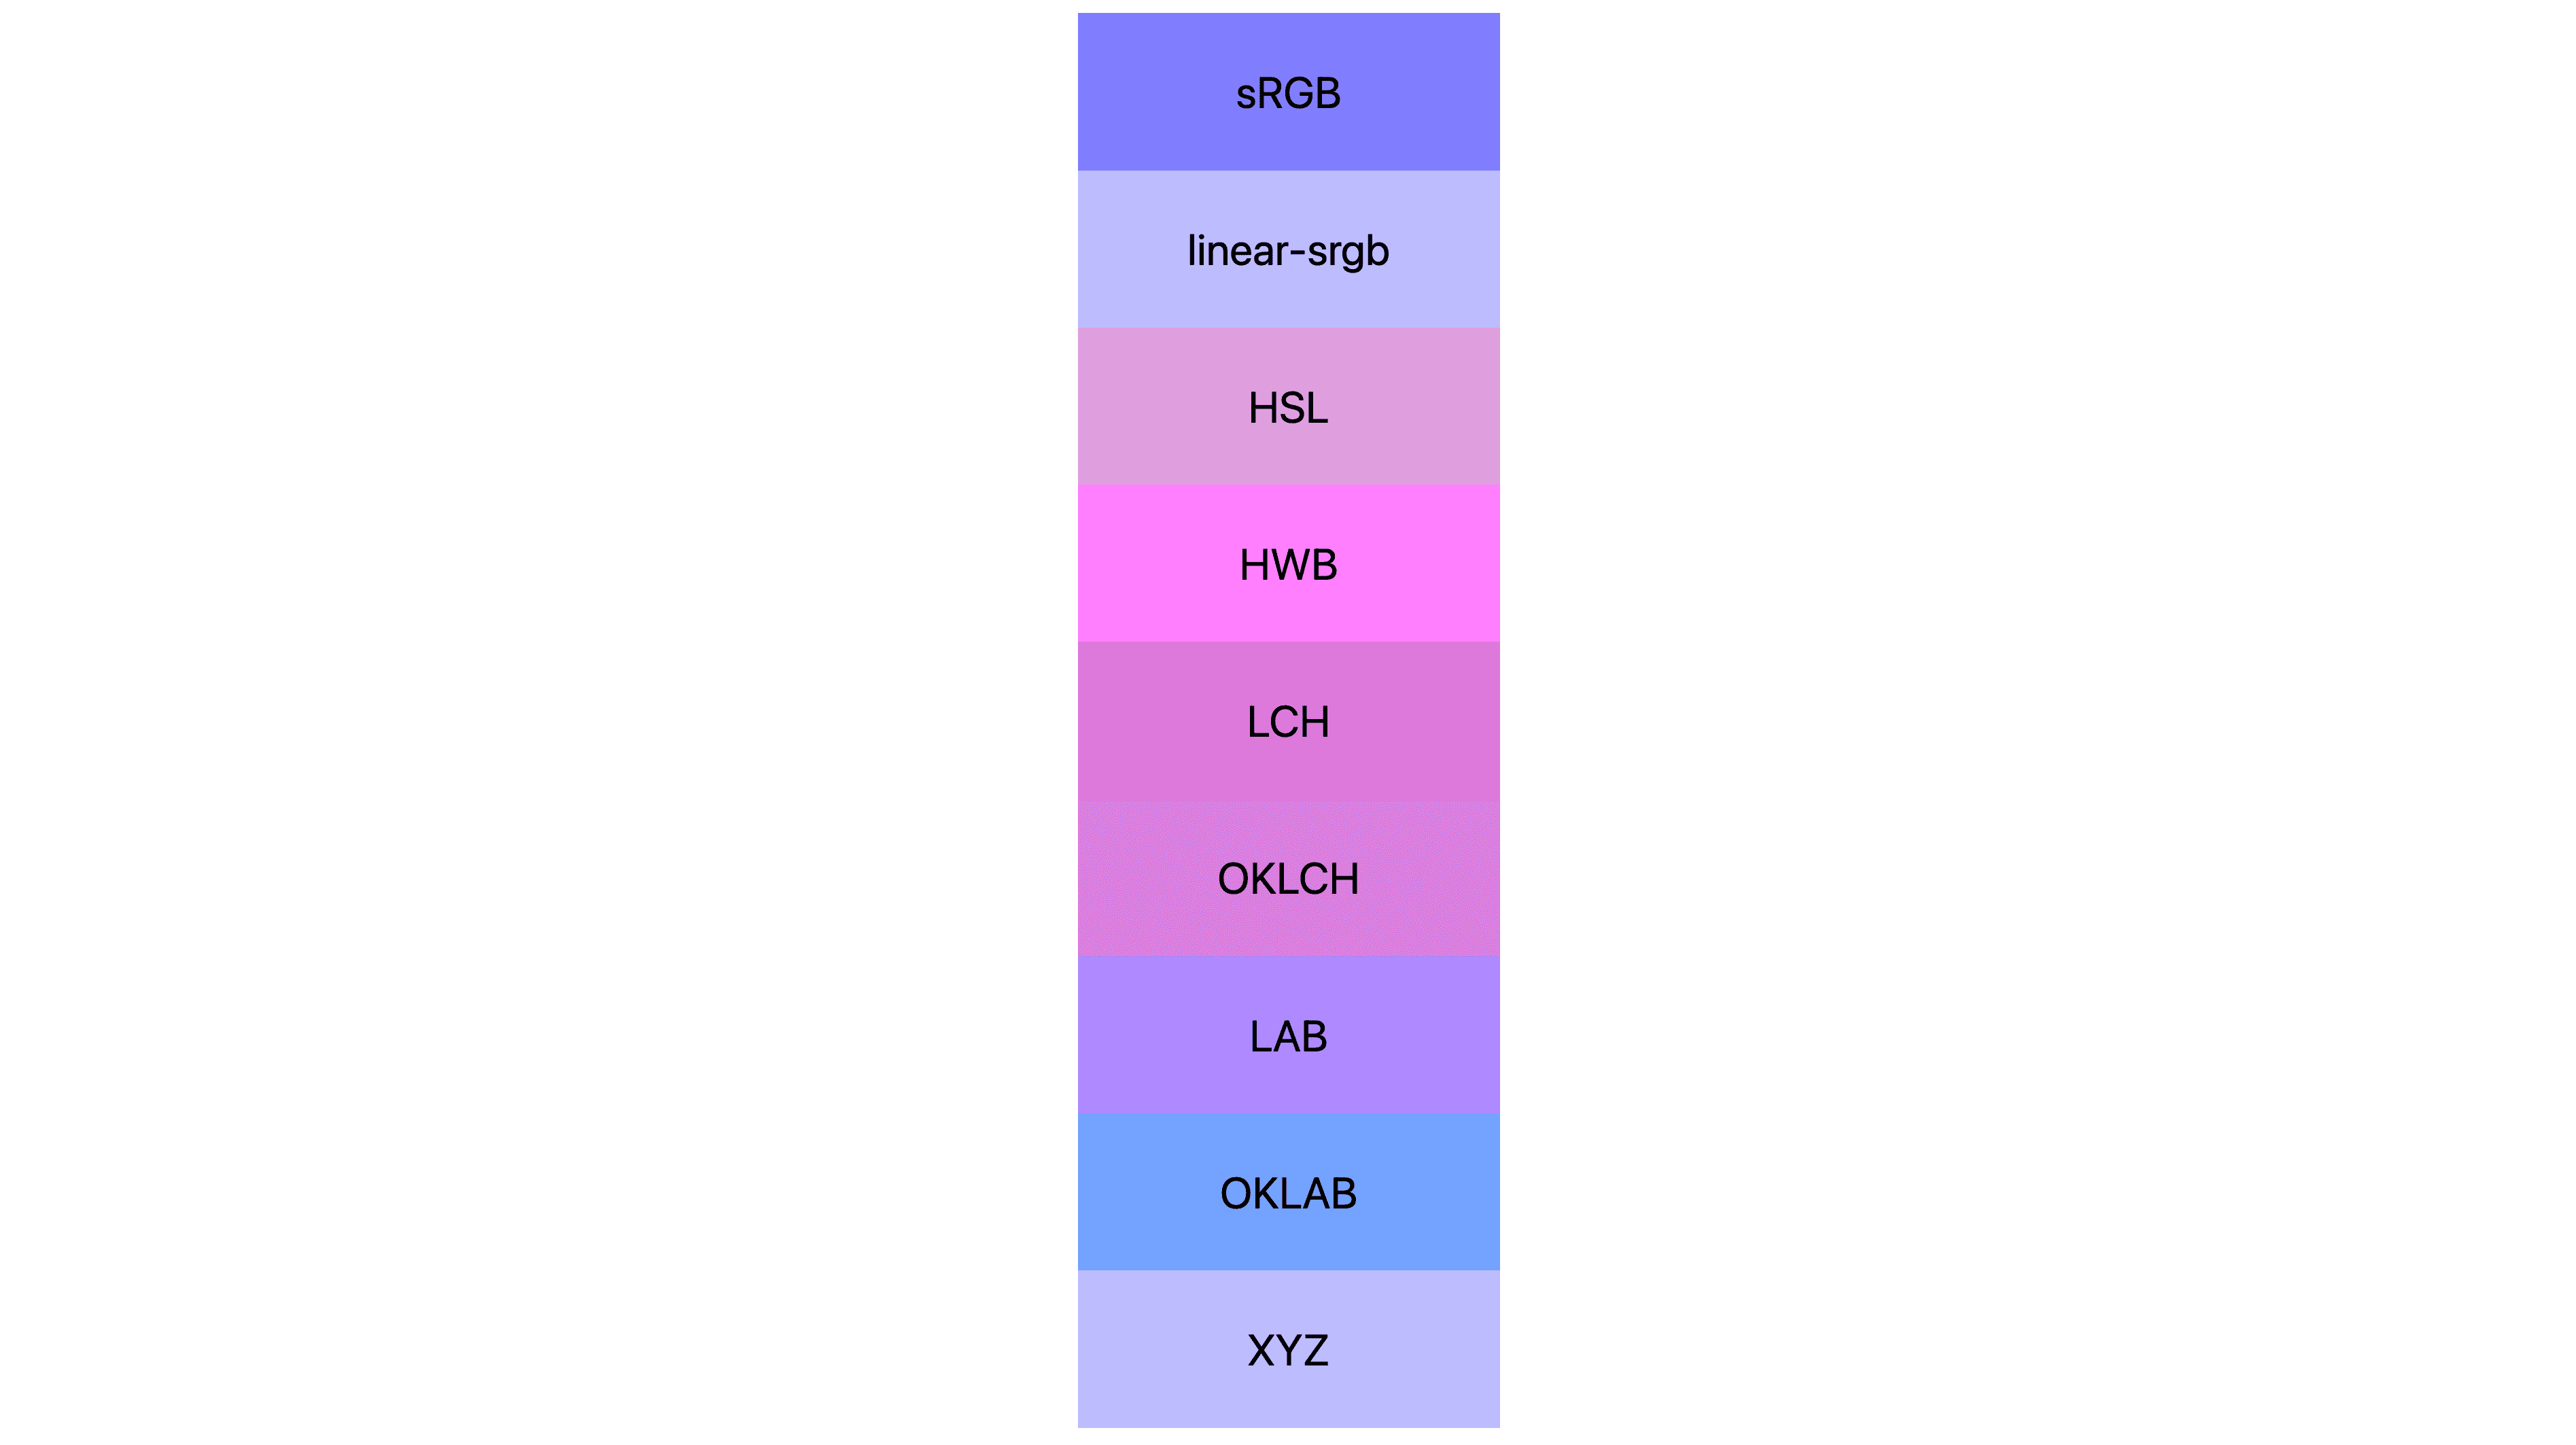 7 個色域 (srgb、Linear-srgb、lch、oklch、lab、oklab、xyz) 兩者的每個顯示結果都不同。許多是粉紅色或紫色，但少數其實還是藍色。